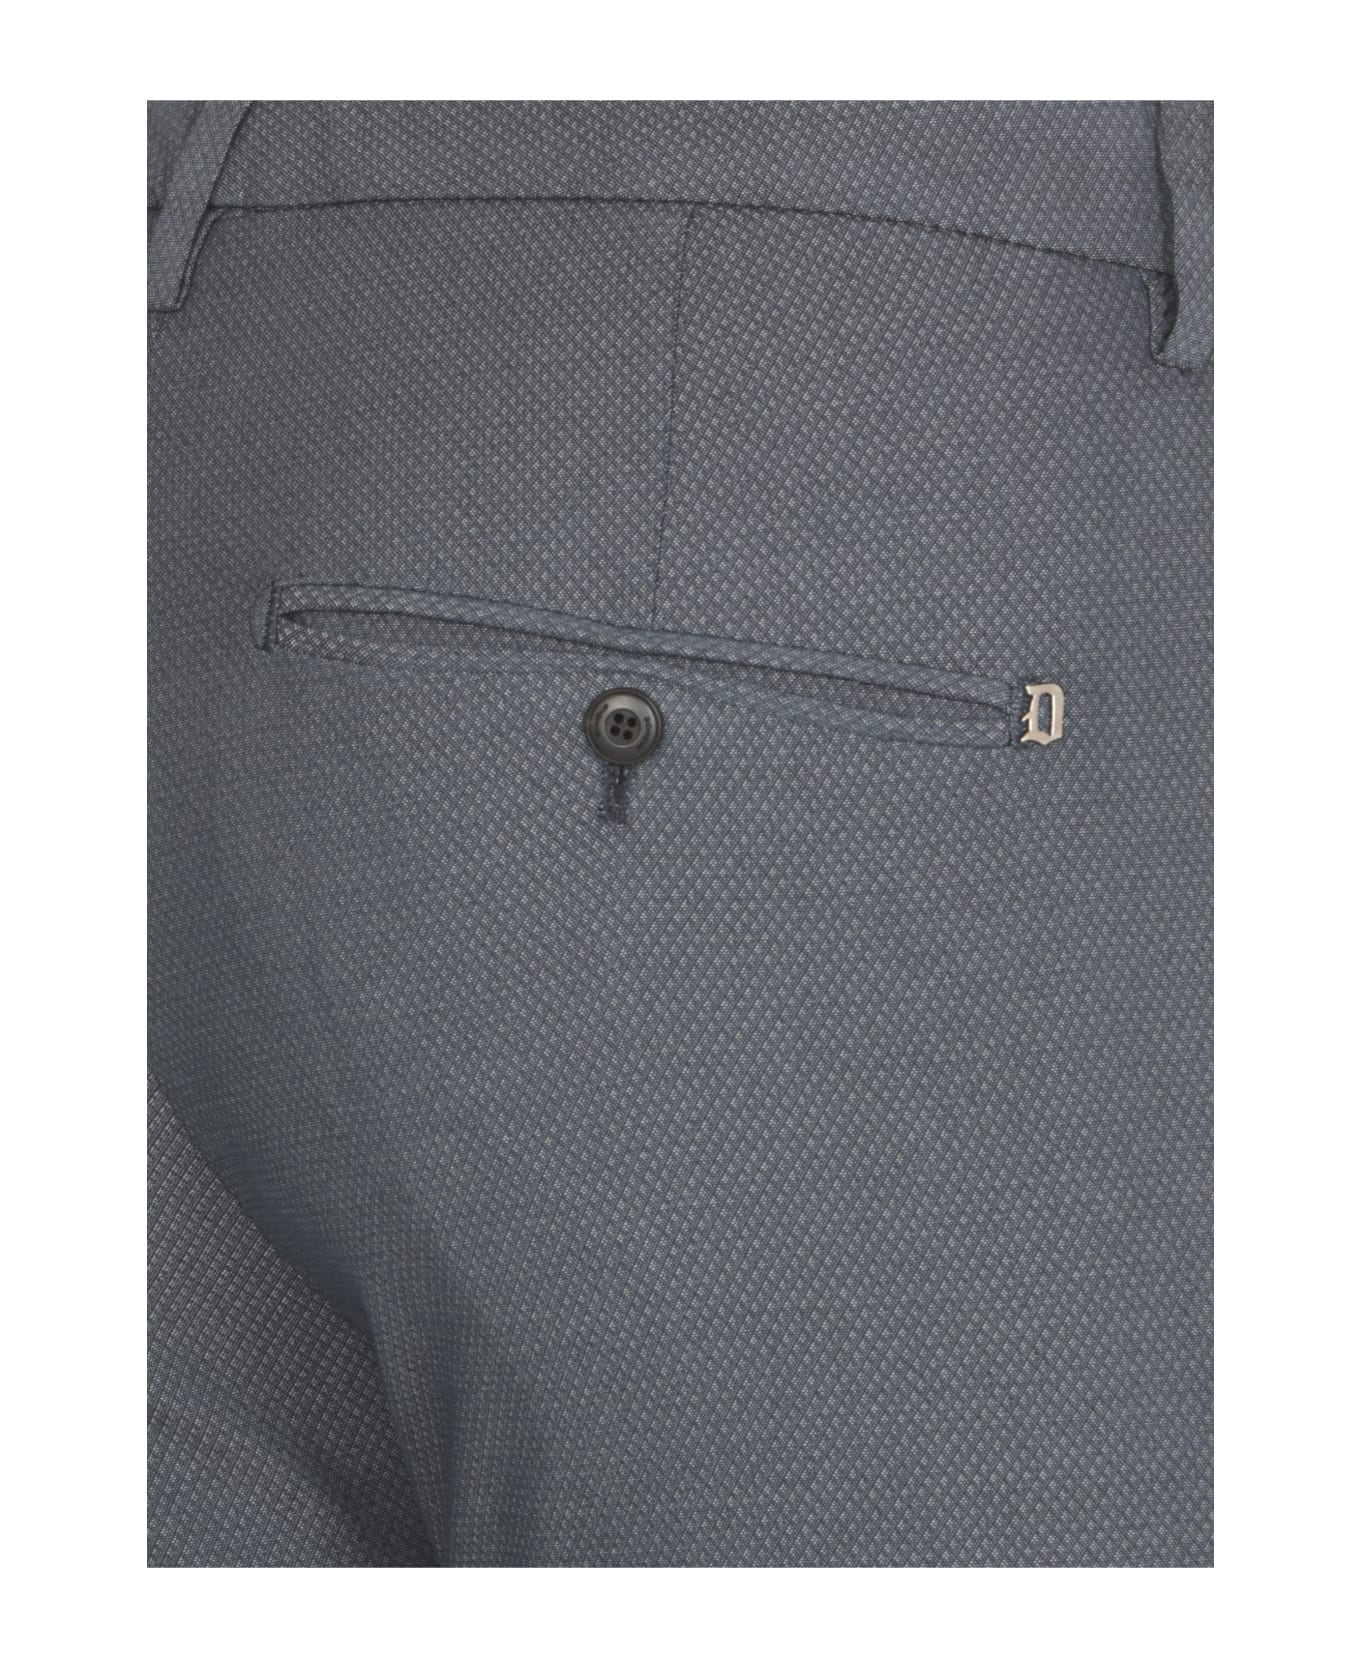 Dondup Gaubert Trousers - Blue